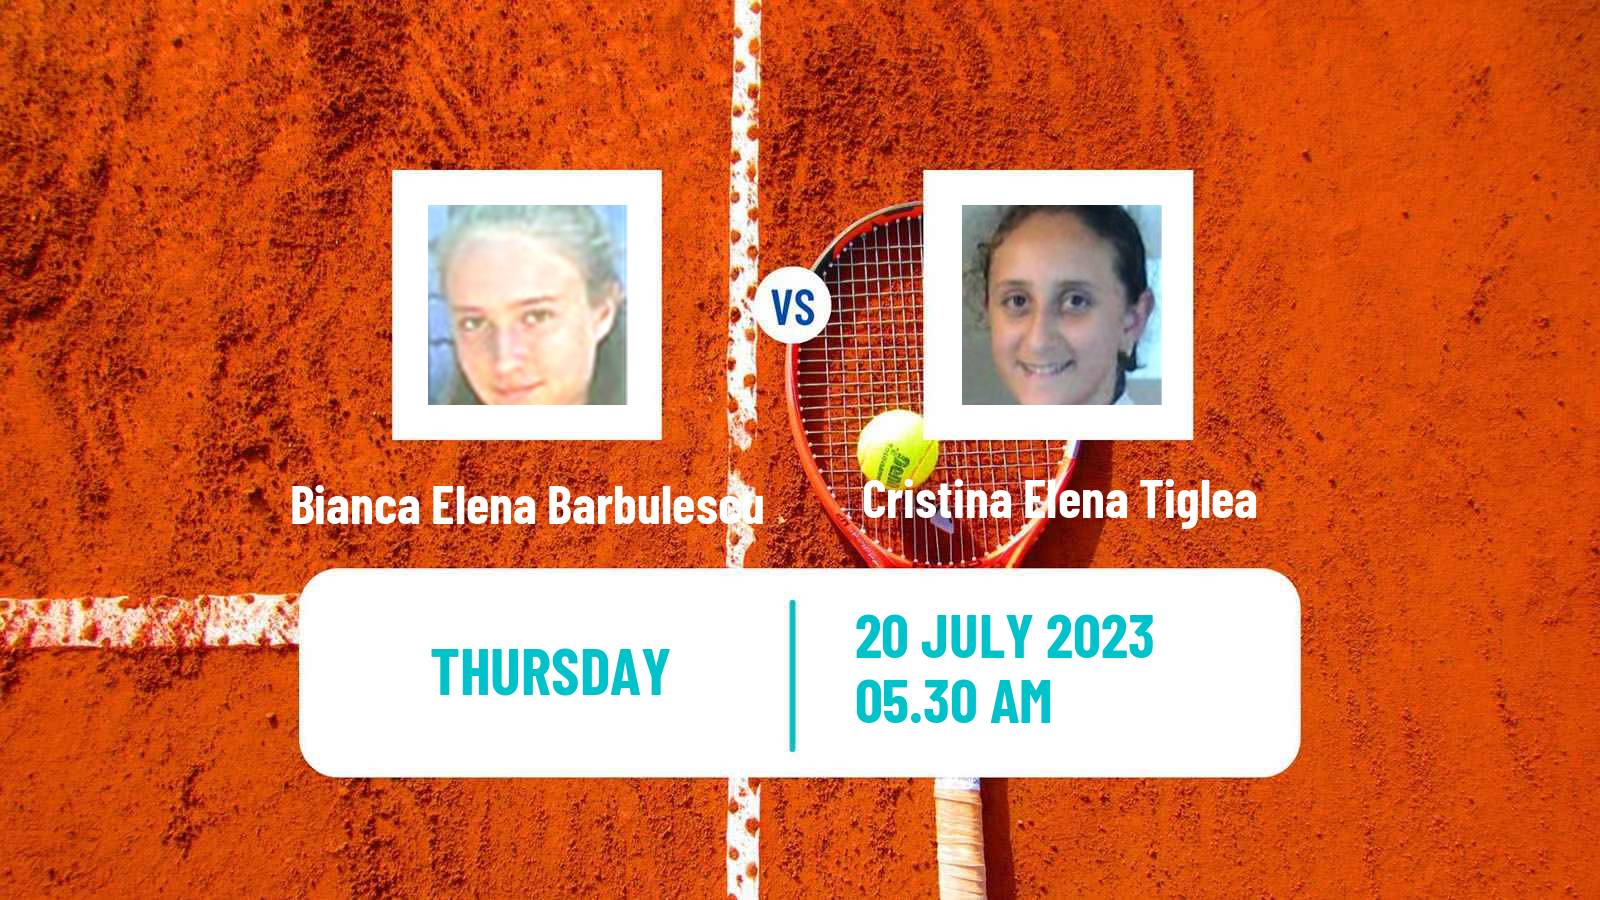 Tennis ITF W15 Monastir 24 Women Bianca Elena Barbulescu - Cristina Elena Tiglea